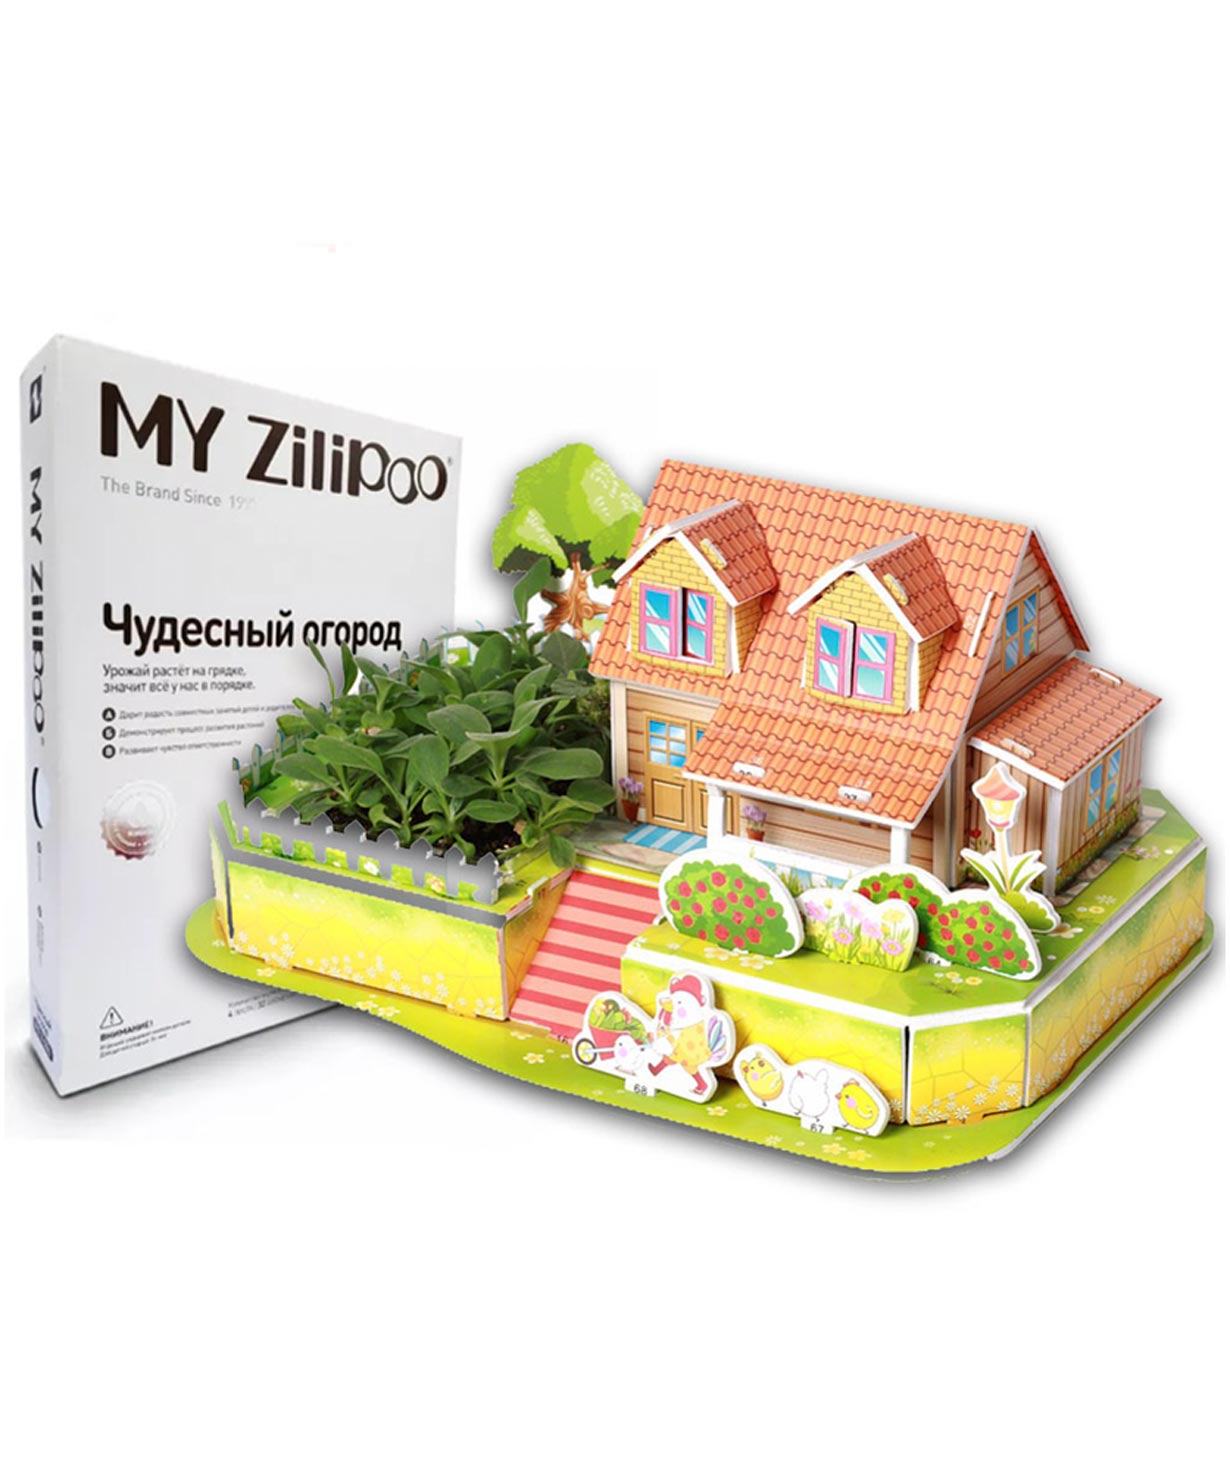 3D փազլ ''My Zilipoo'' Բնական բույսերով իմ հրաշք այգին